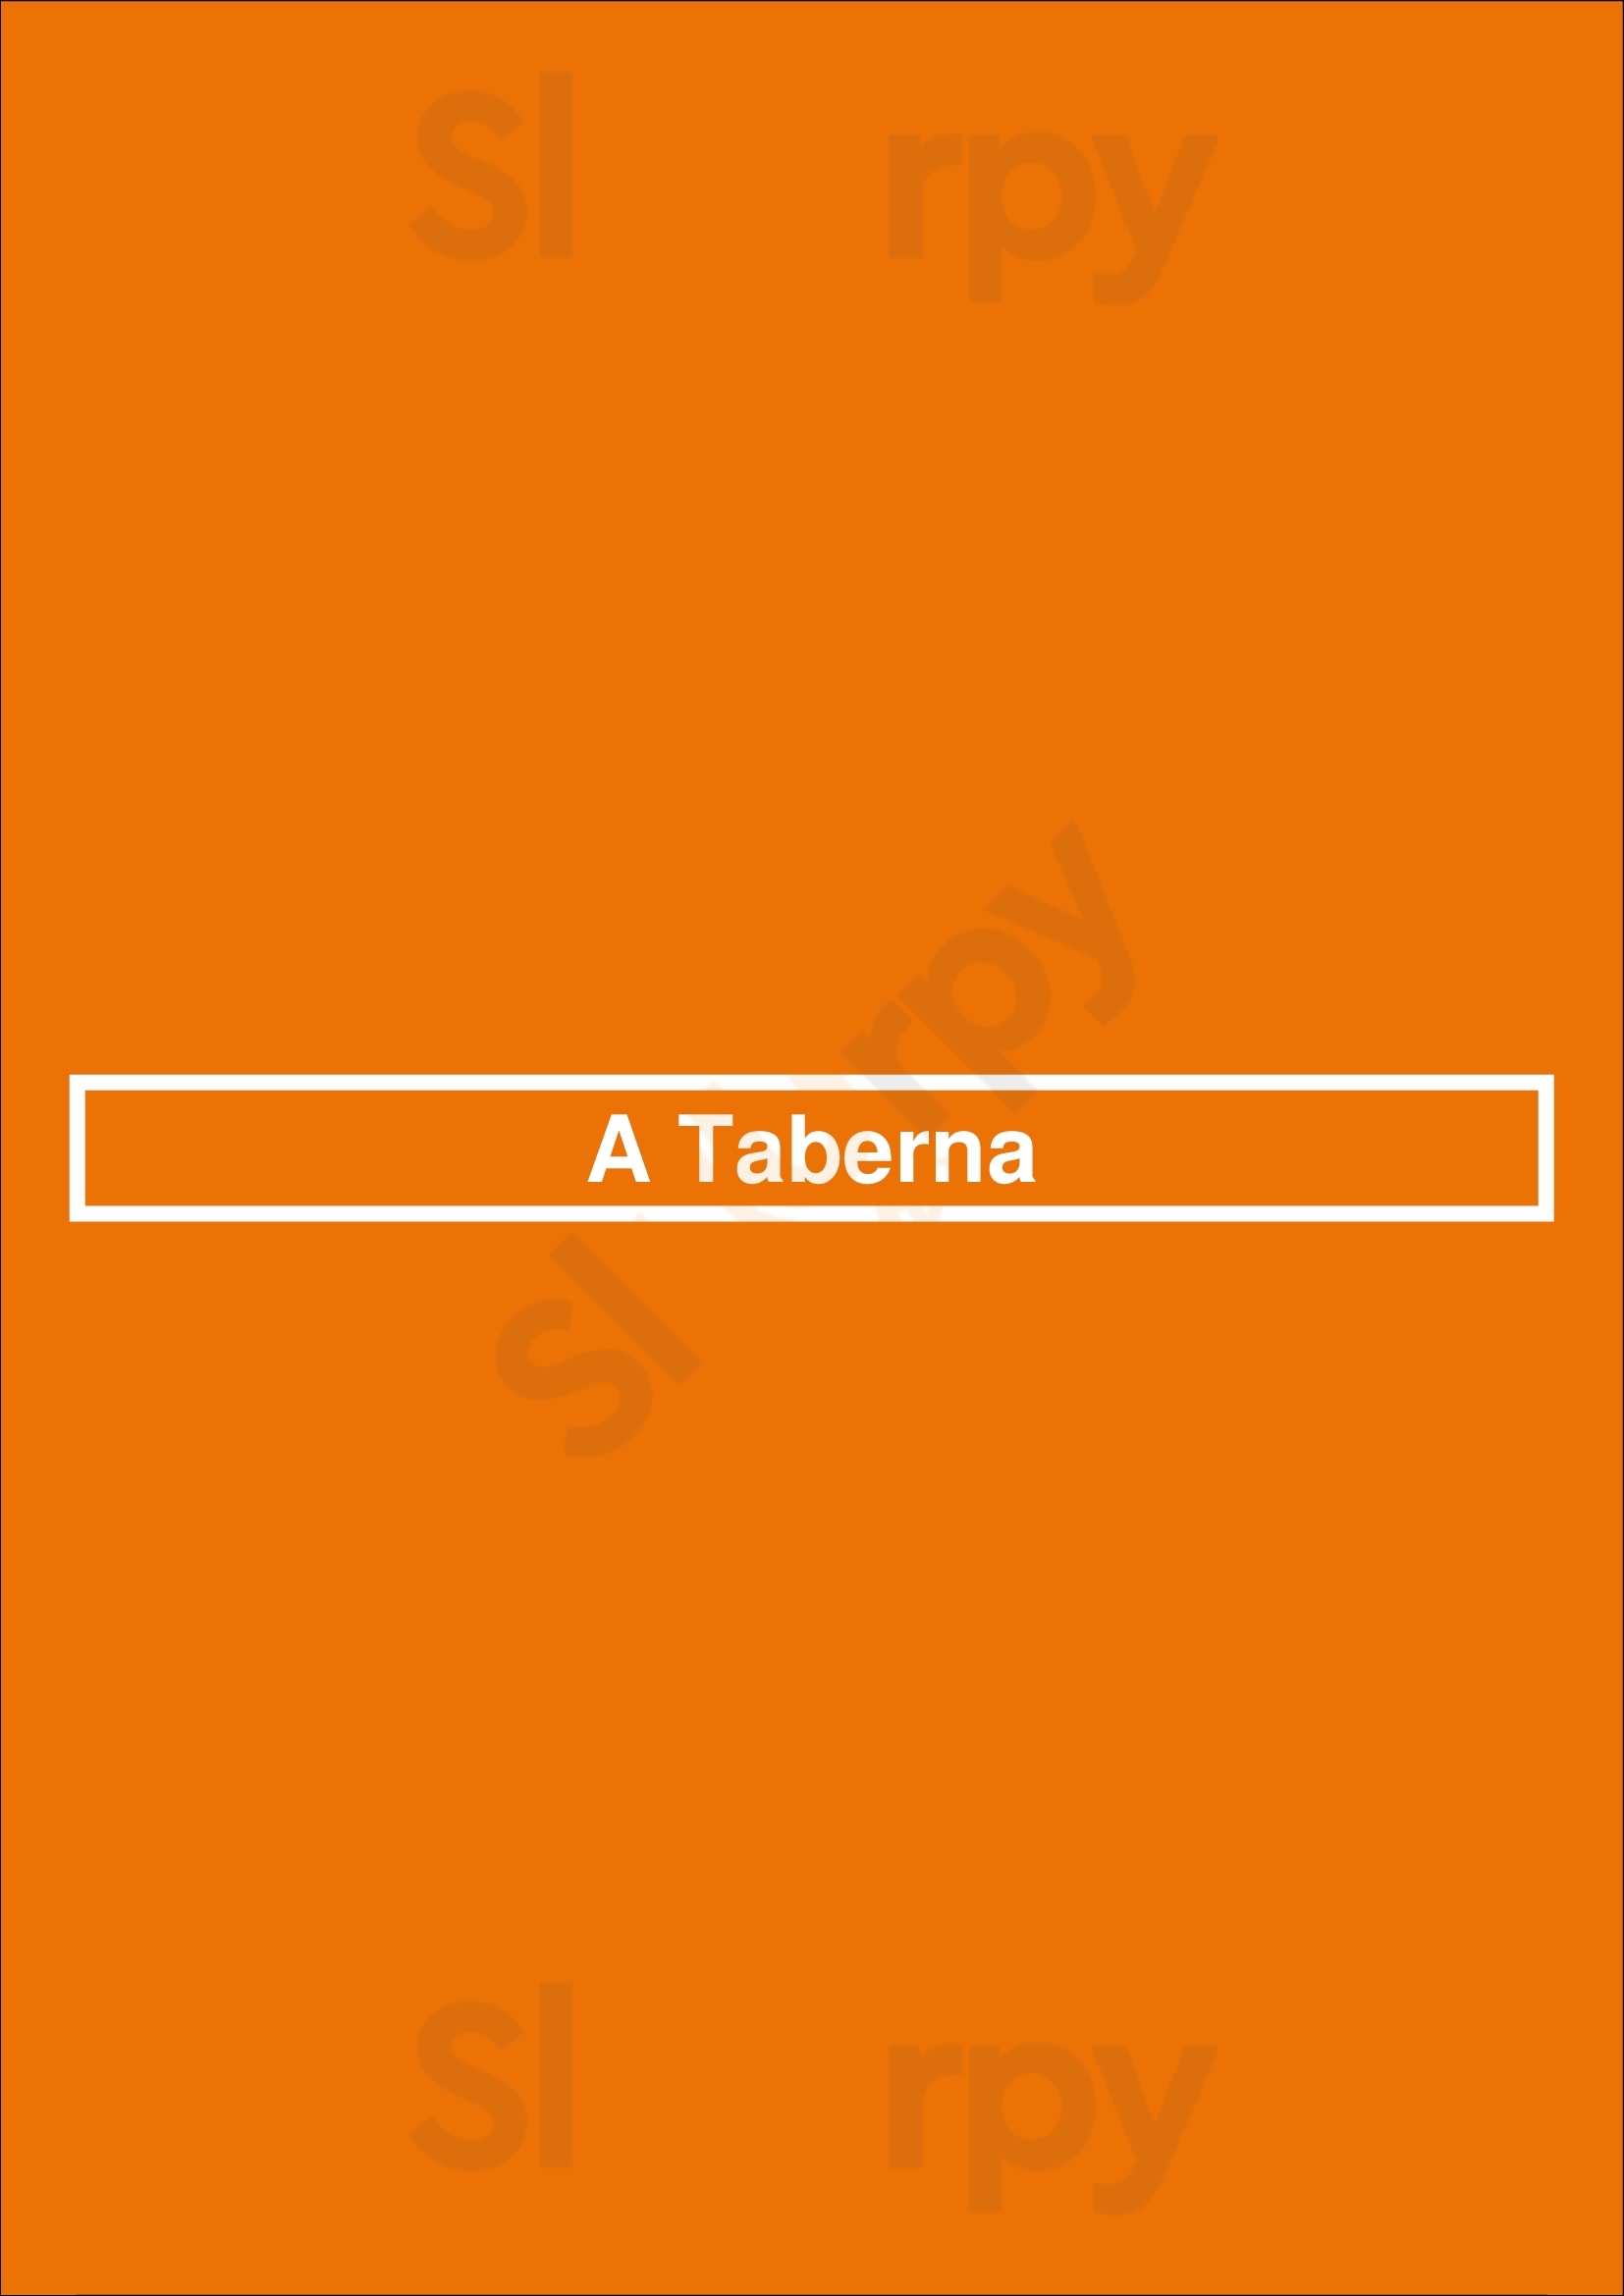 A Taberna Coimbra Menu - 1